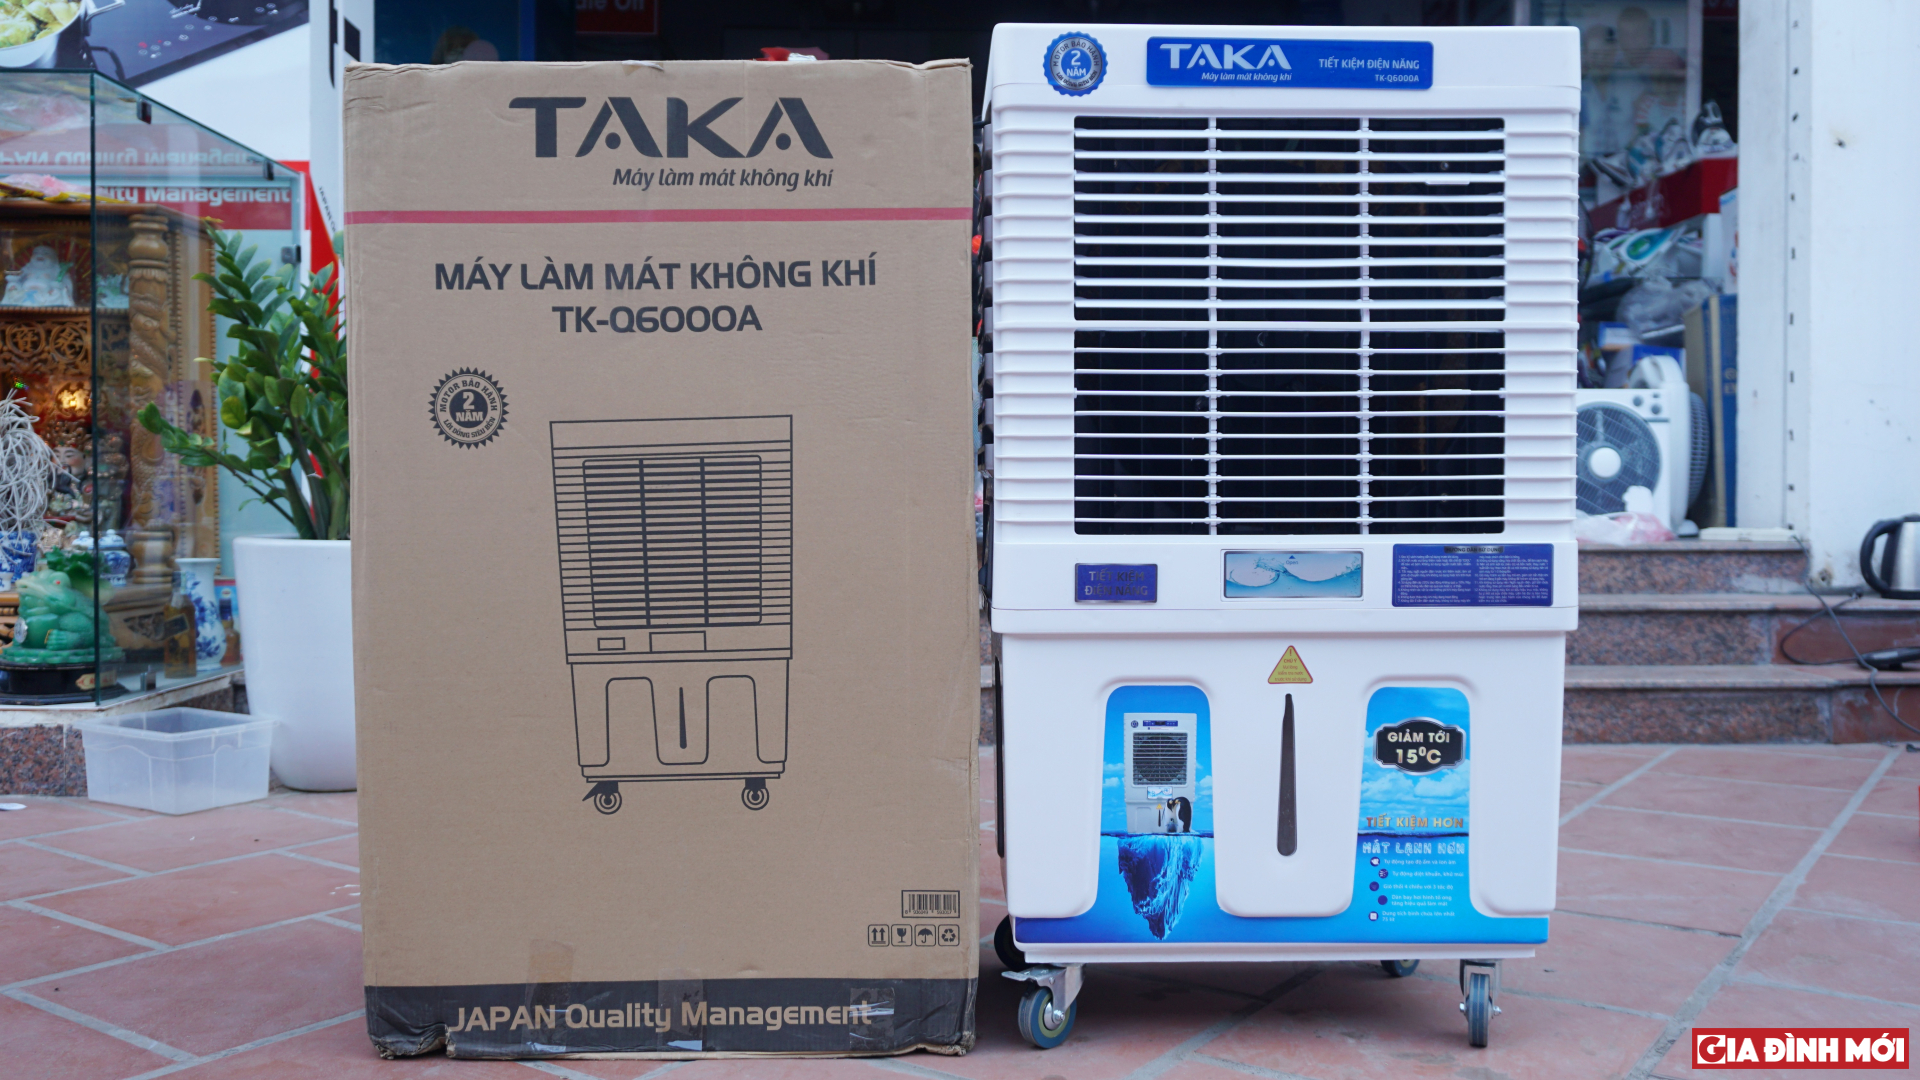 Đánh giá máy làm mát không khí Taka TK-Q6000A: Làm mát nhanh, siêu tiết kiệm điện, giá 5,5 triệu đồng 0